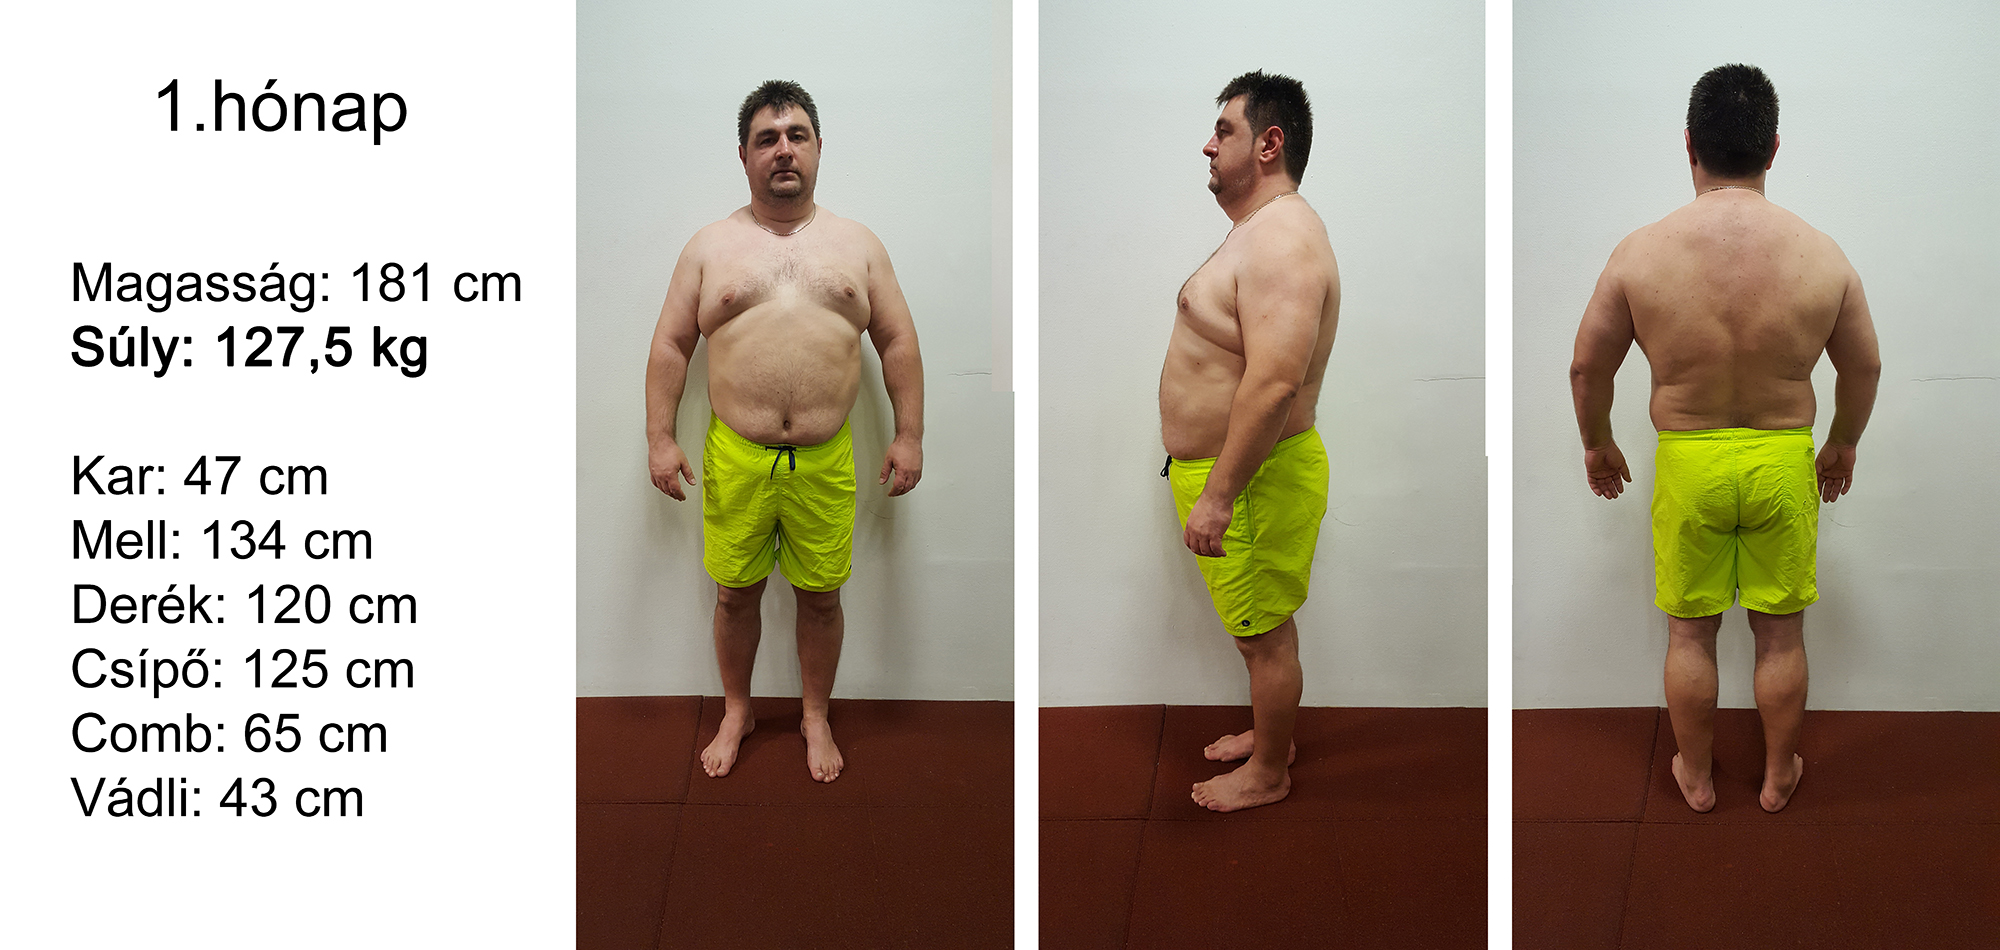 Jon Gabriel, az a férfi, aki kg-ot fogyott diéta nélkül